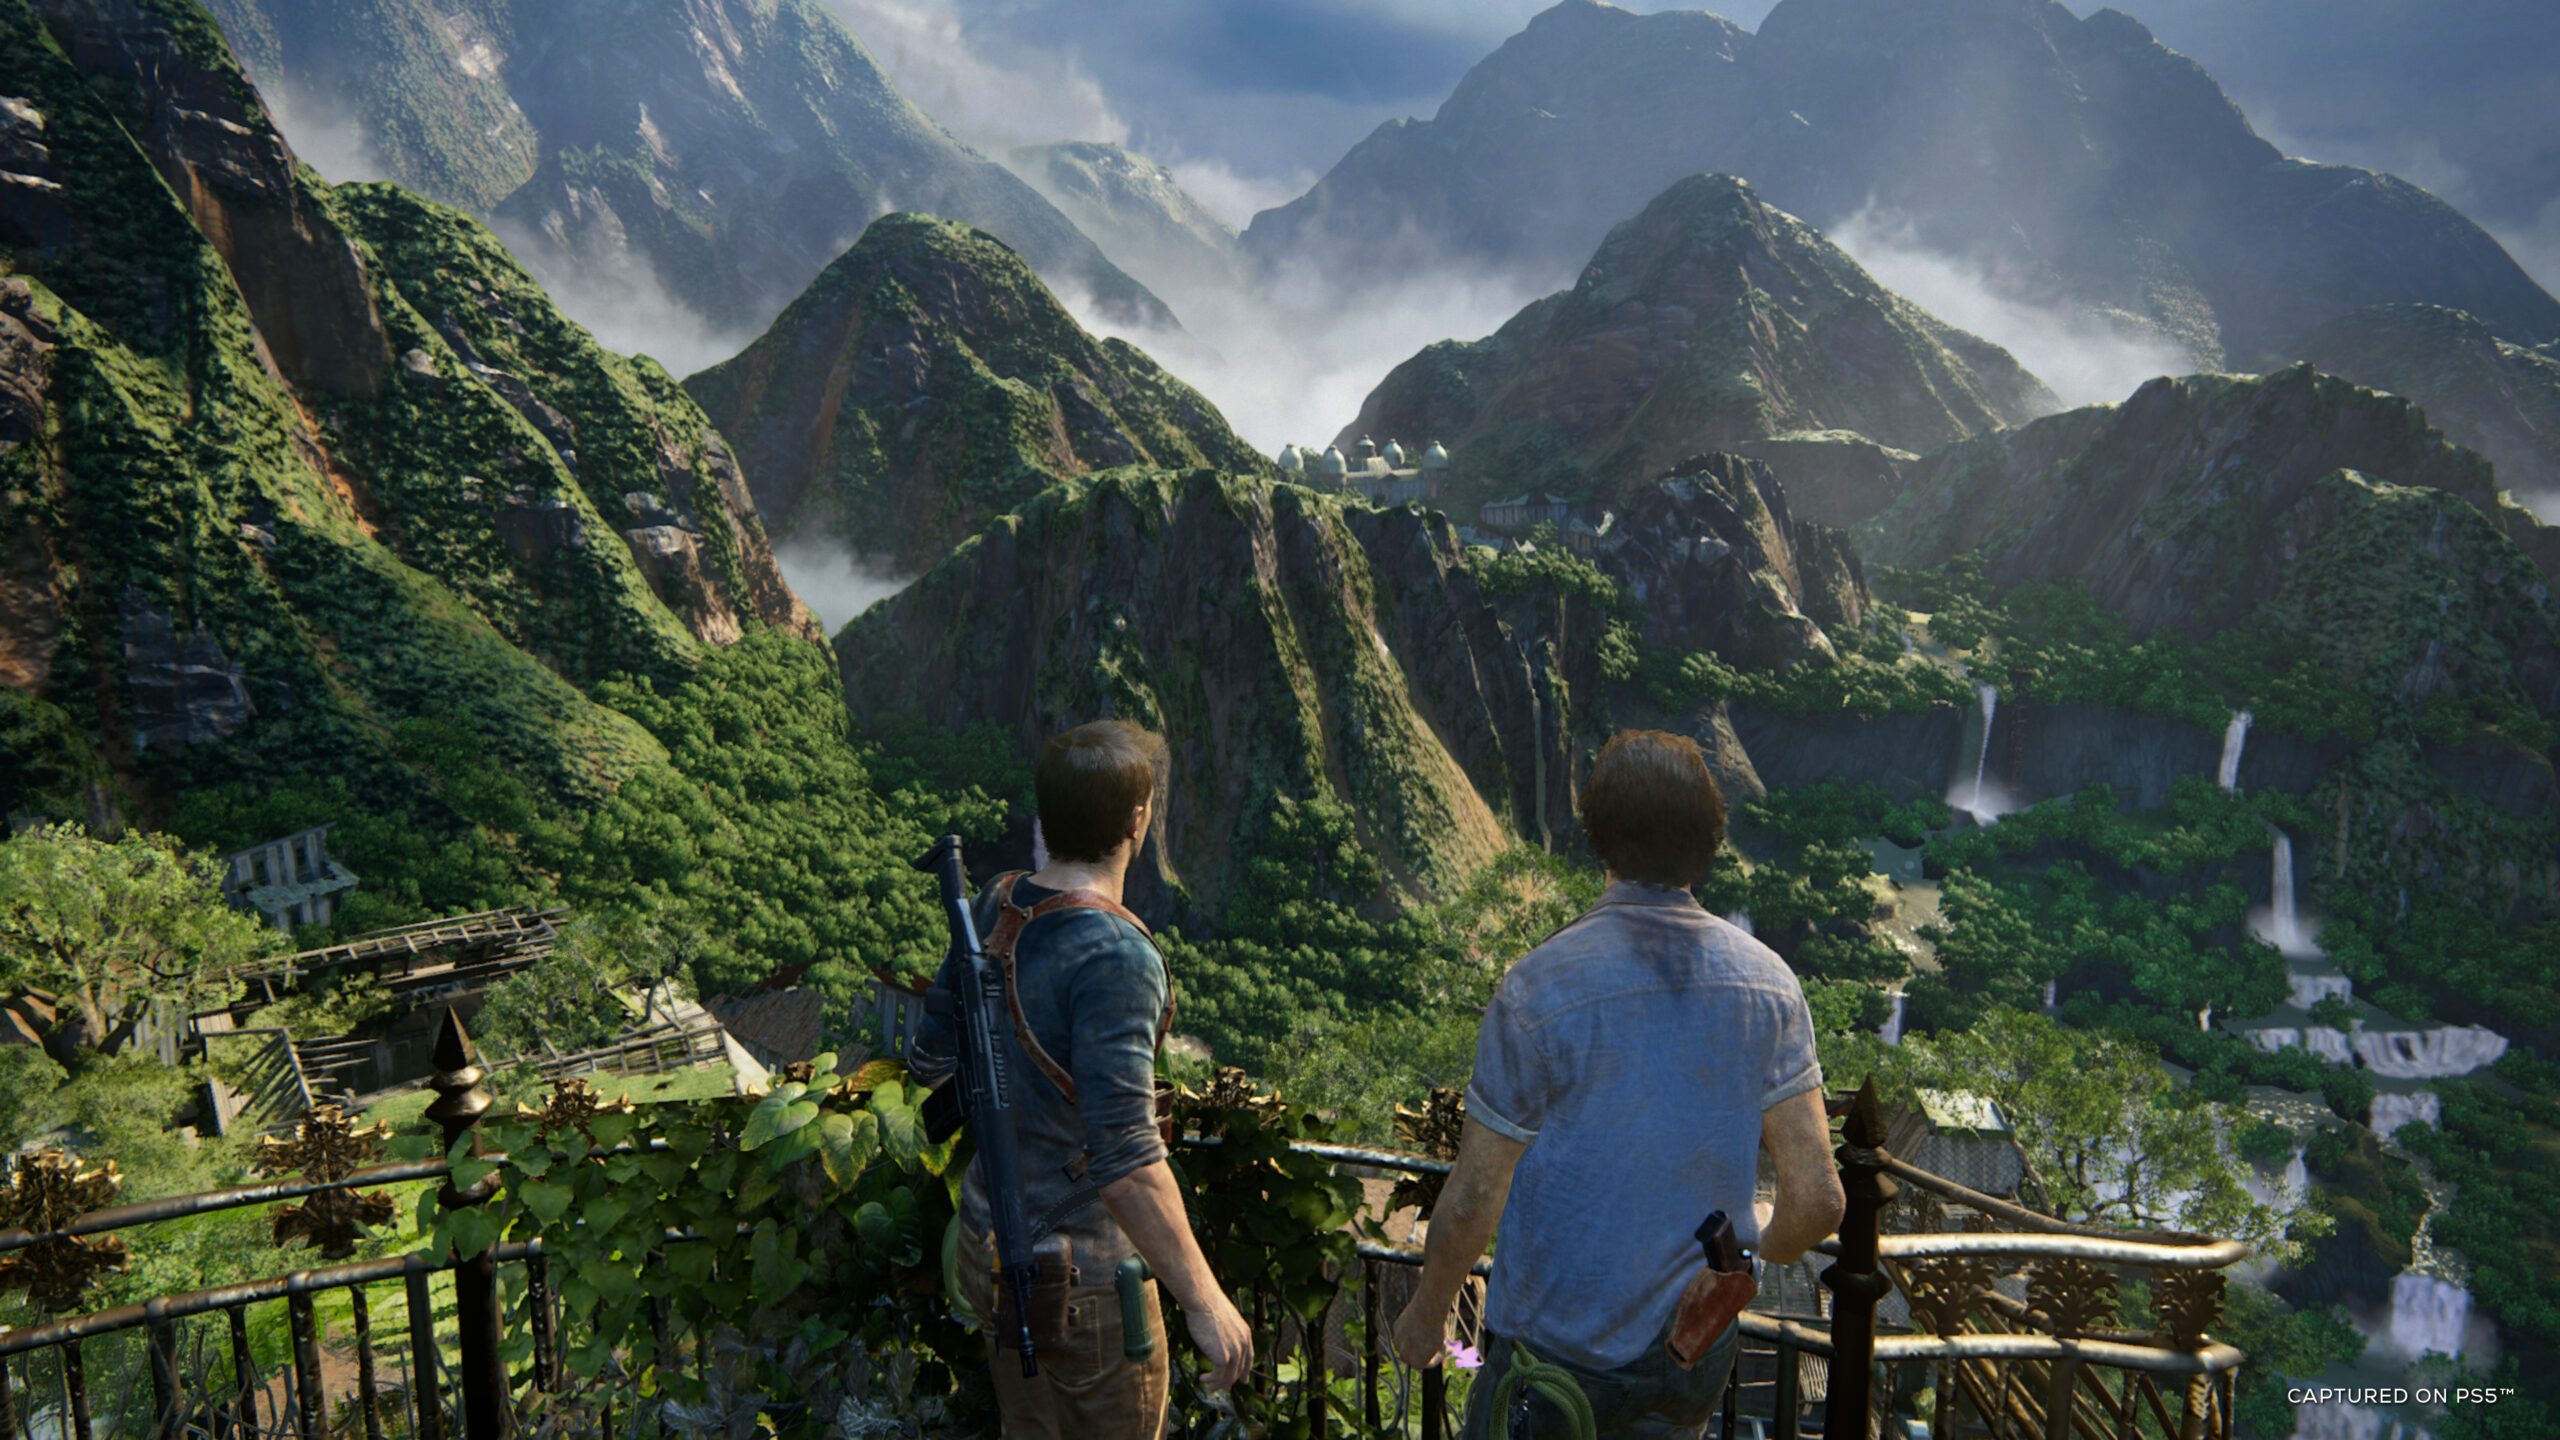 Uncharted: Fora do Mapa  Sony comemora sucesso e já fala em